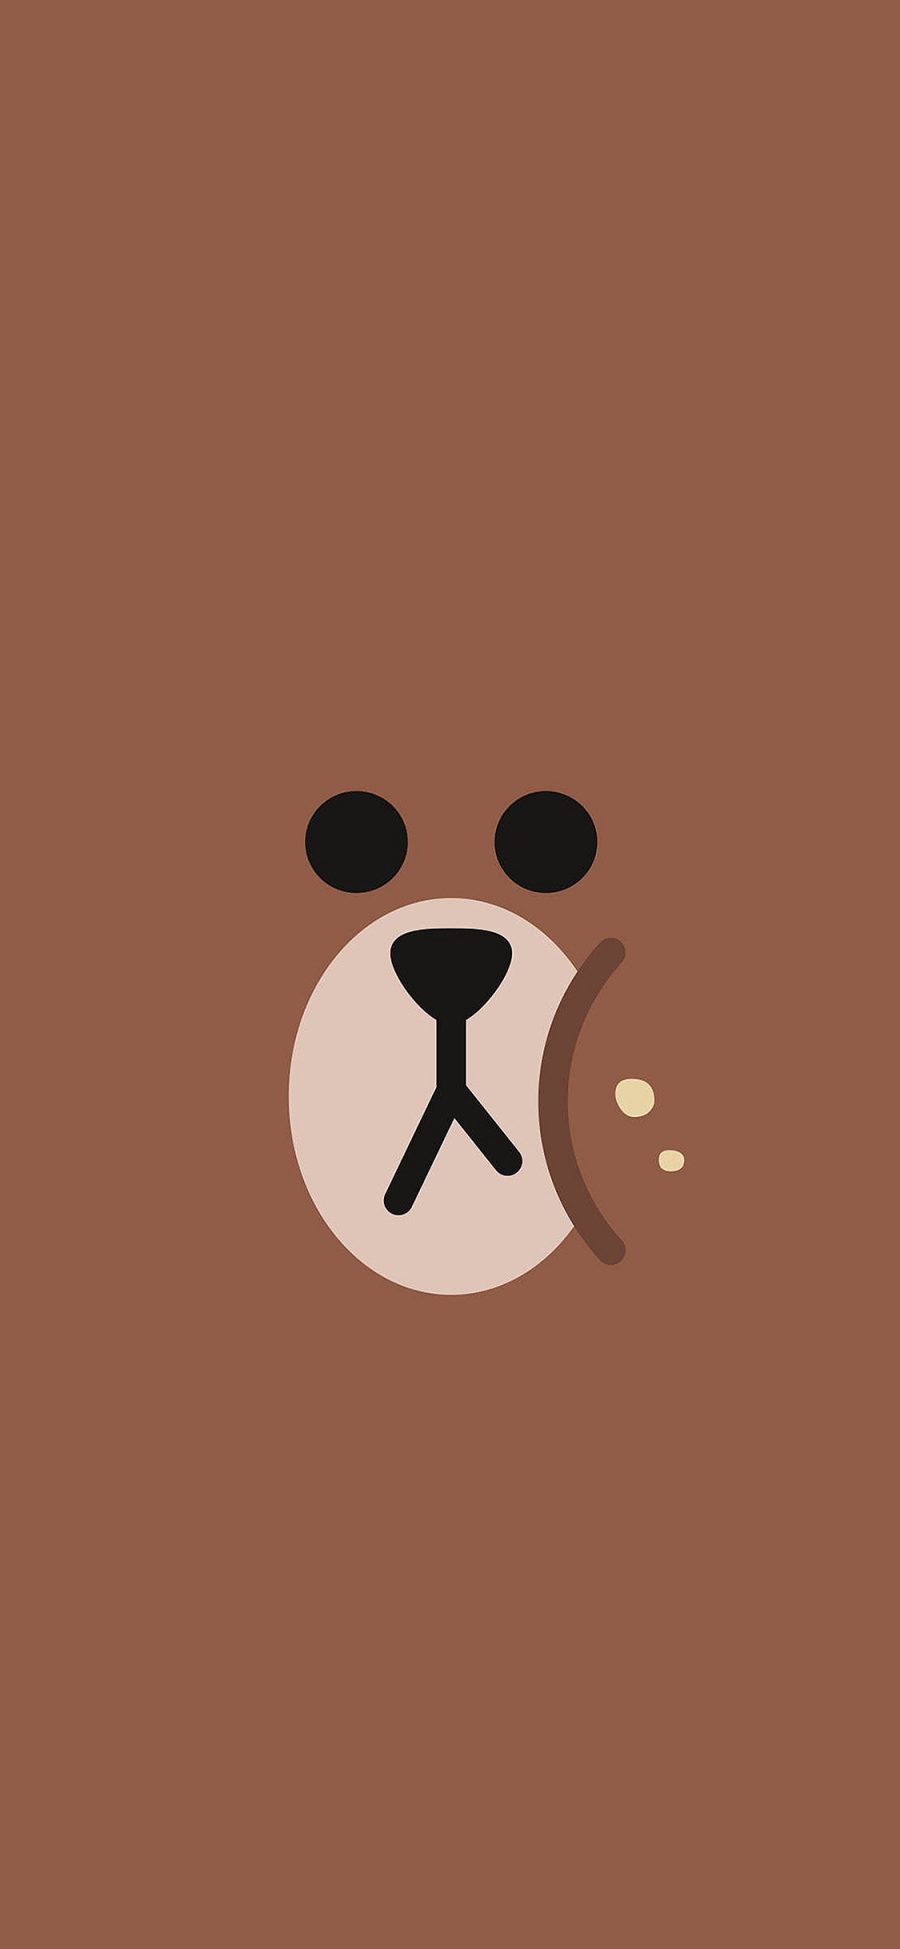 [2436×1125]布朗熊 line friends 棕色 可爱 卡通 苹果手机动漫壁纸图片